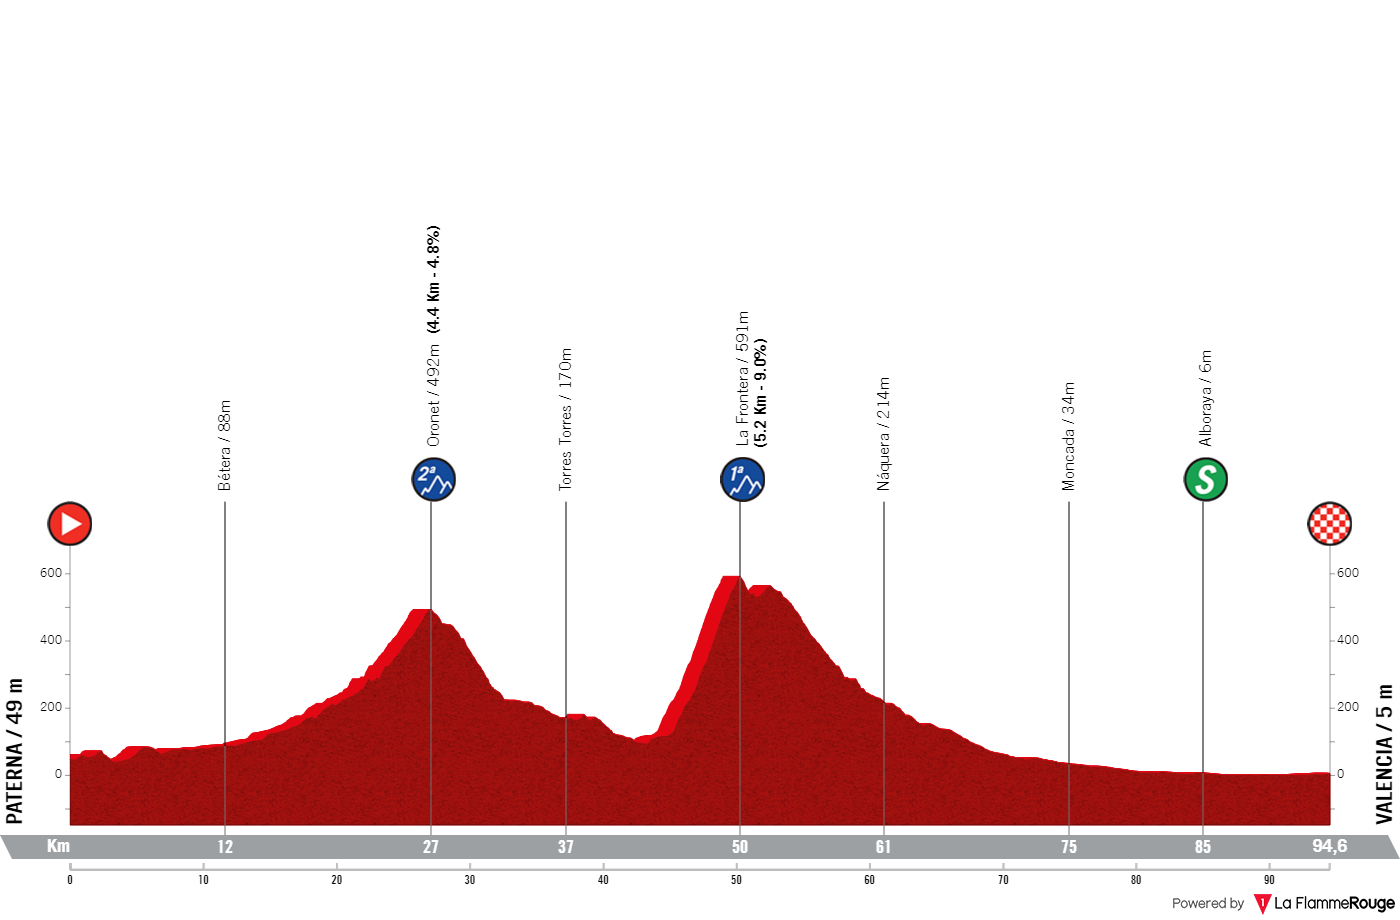 Stage 5: Paterna - Valencia, 93.2 kilometers